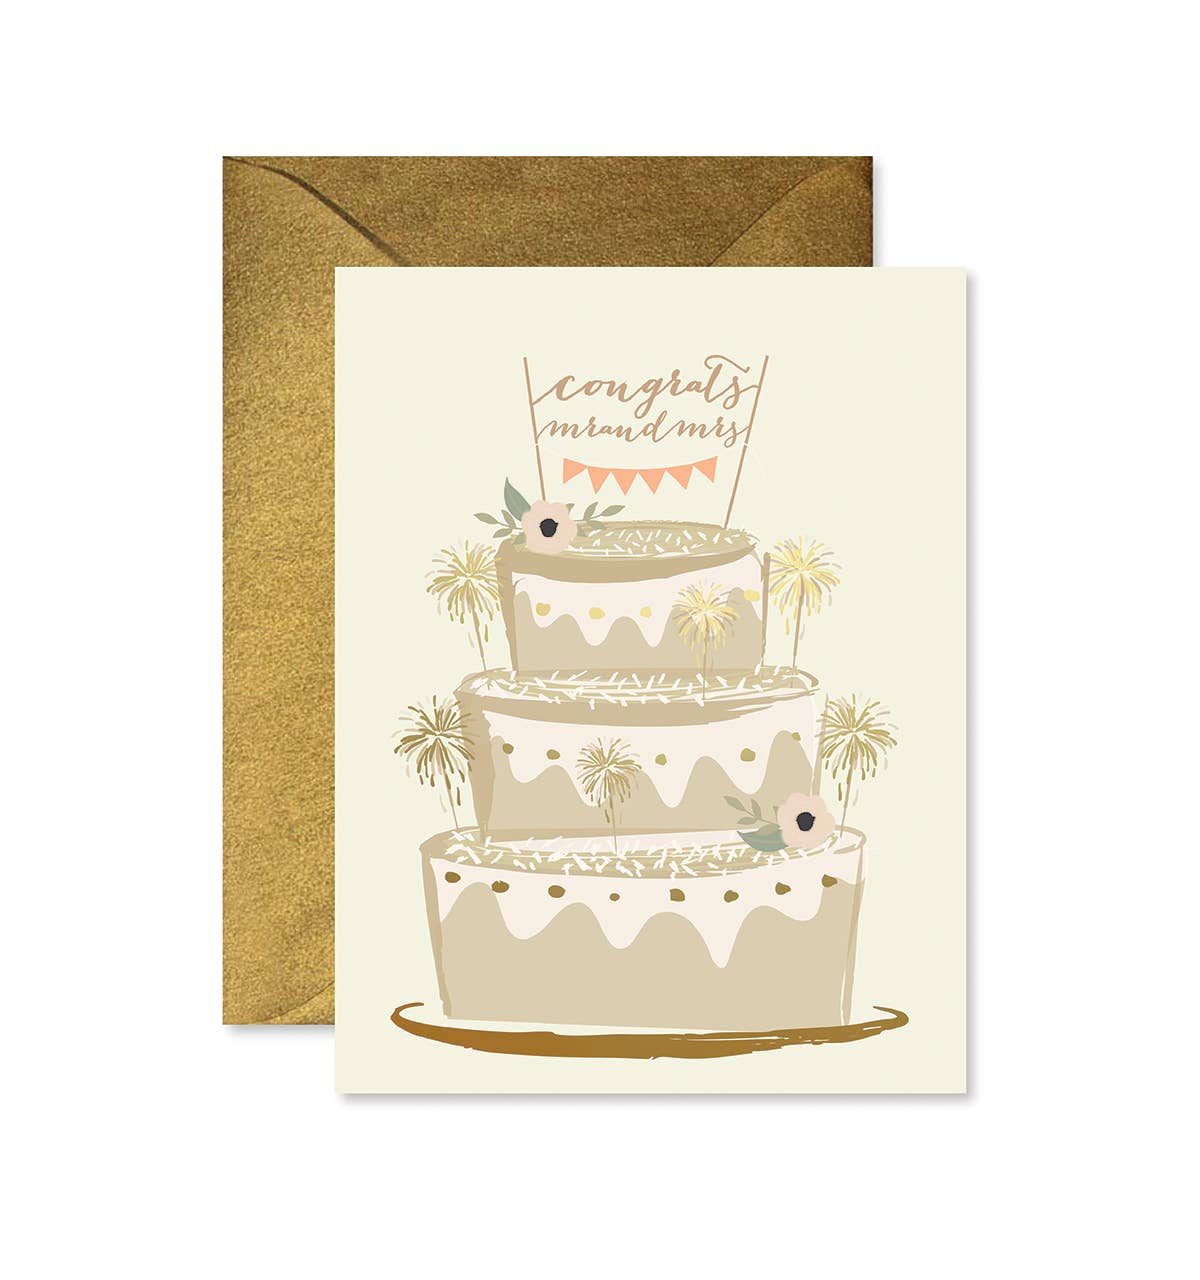 Mr & Mrs Sparkler Cake Greeting Card